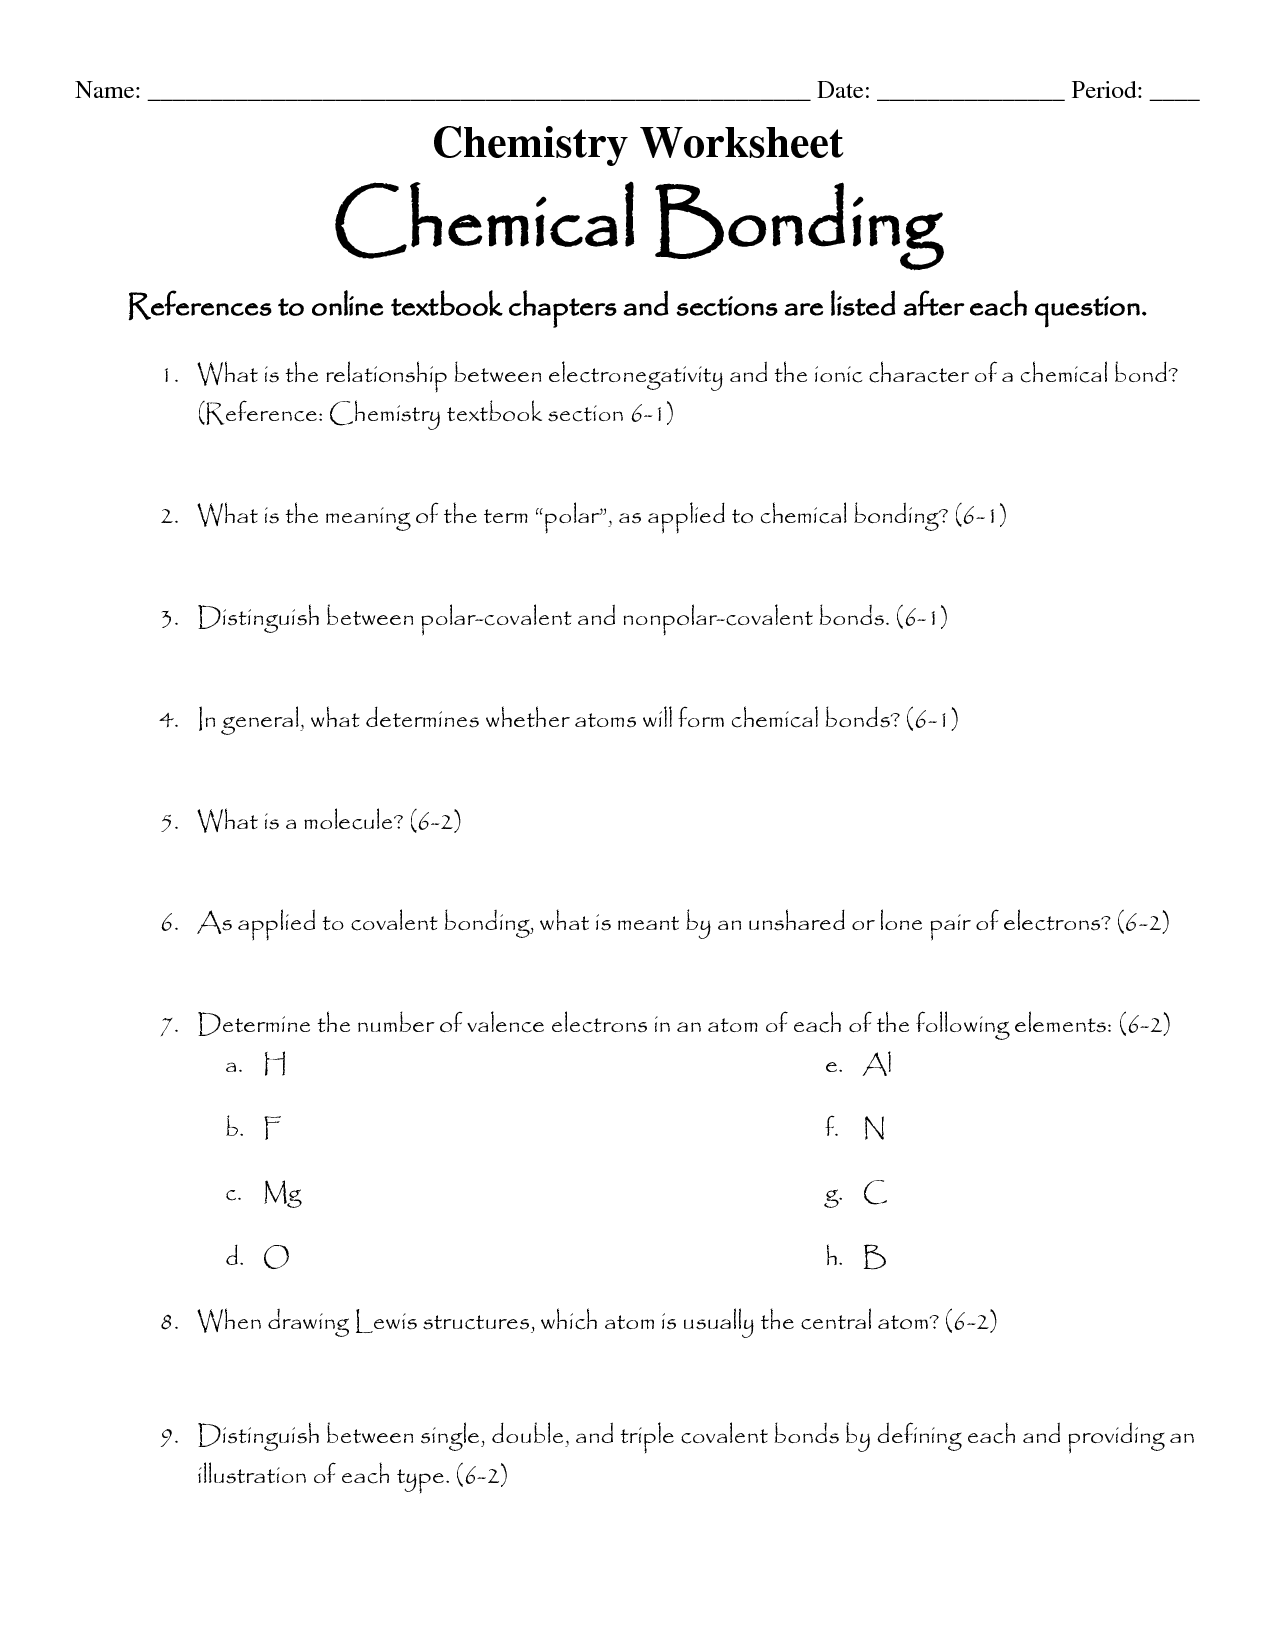 Chemical Bonding Worksheet Answer Key Image